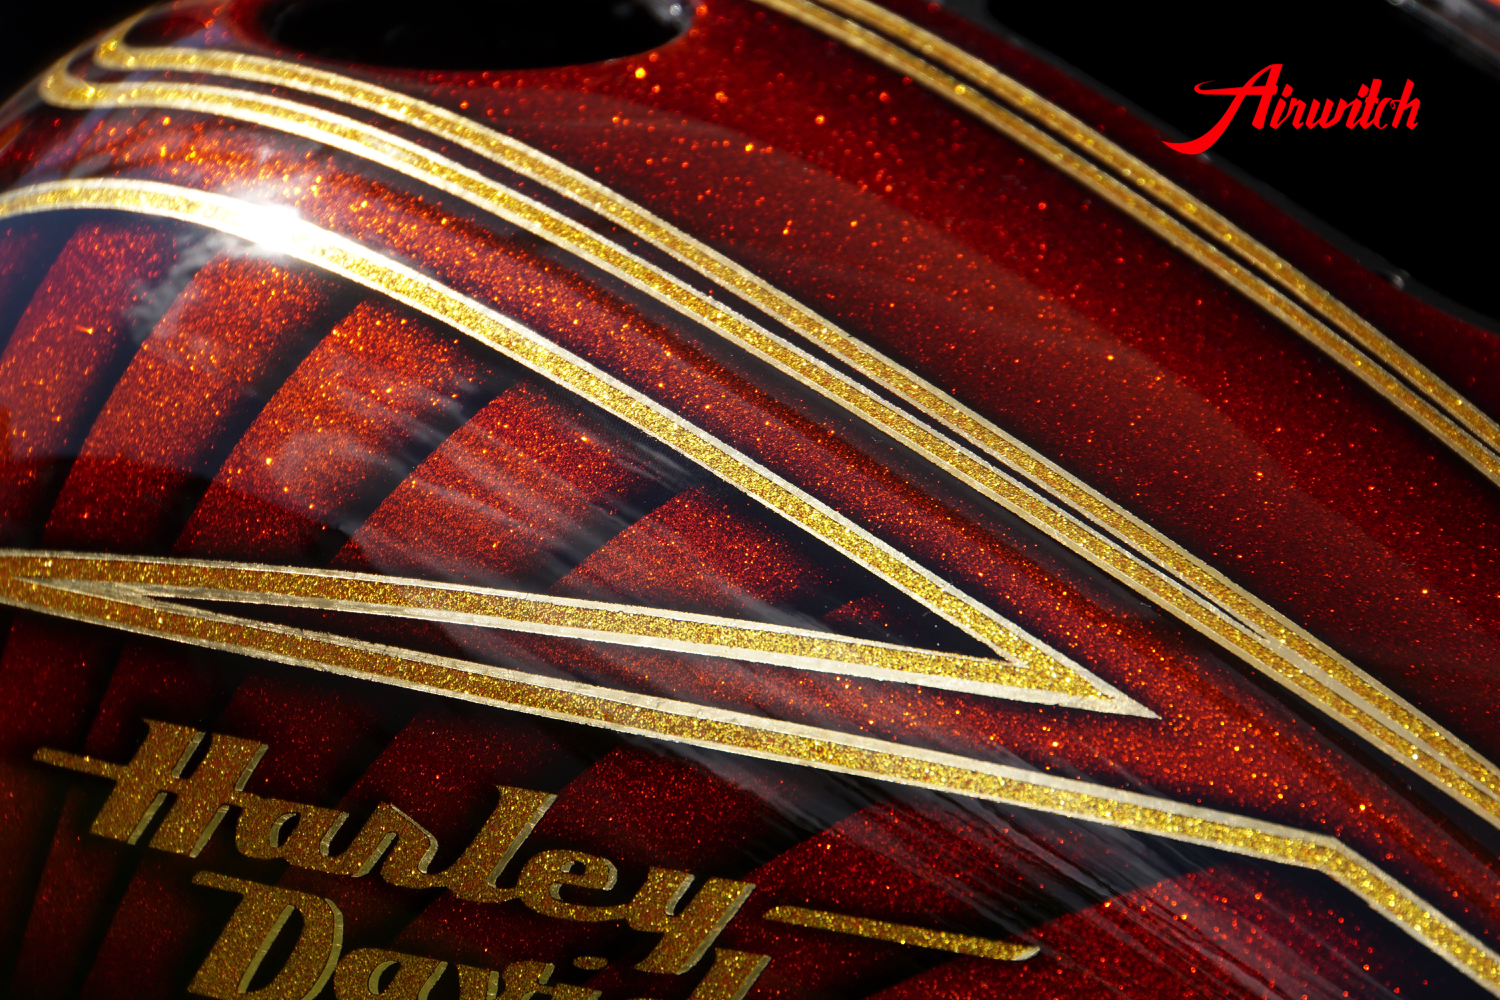 Luxus Custom Painting eines Harley Davidson Tank mit goldenen Metalflakes und Blattgold